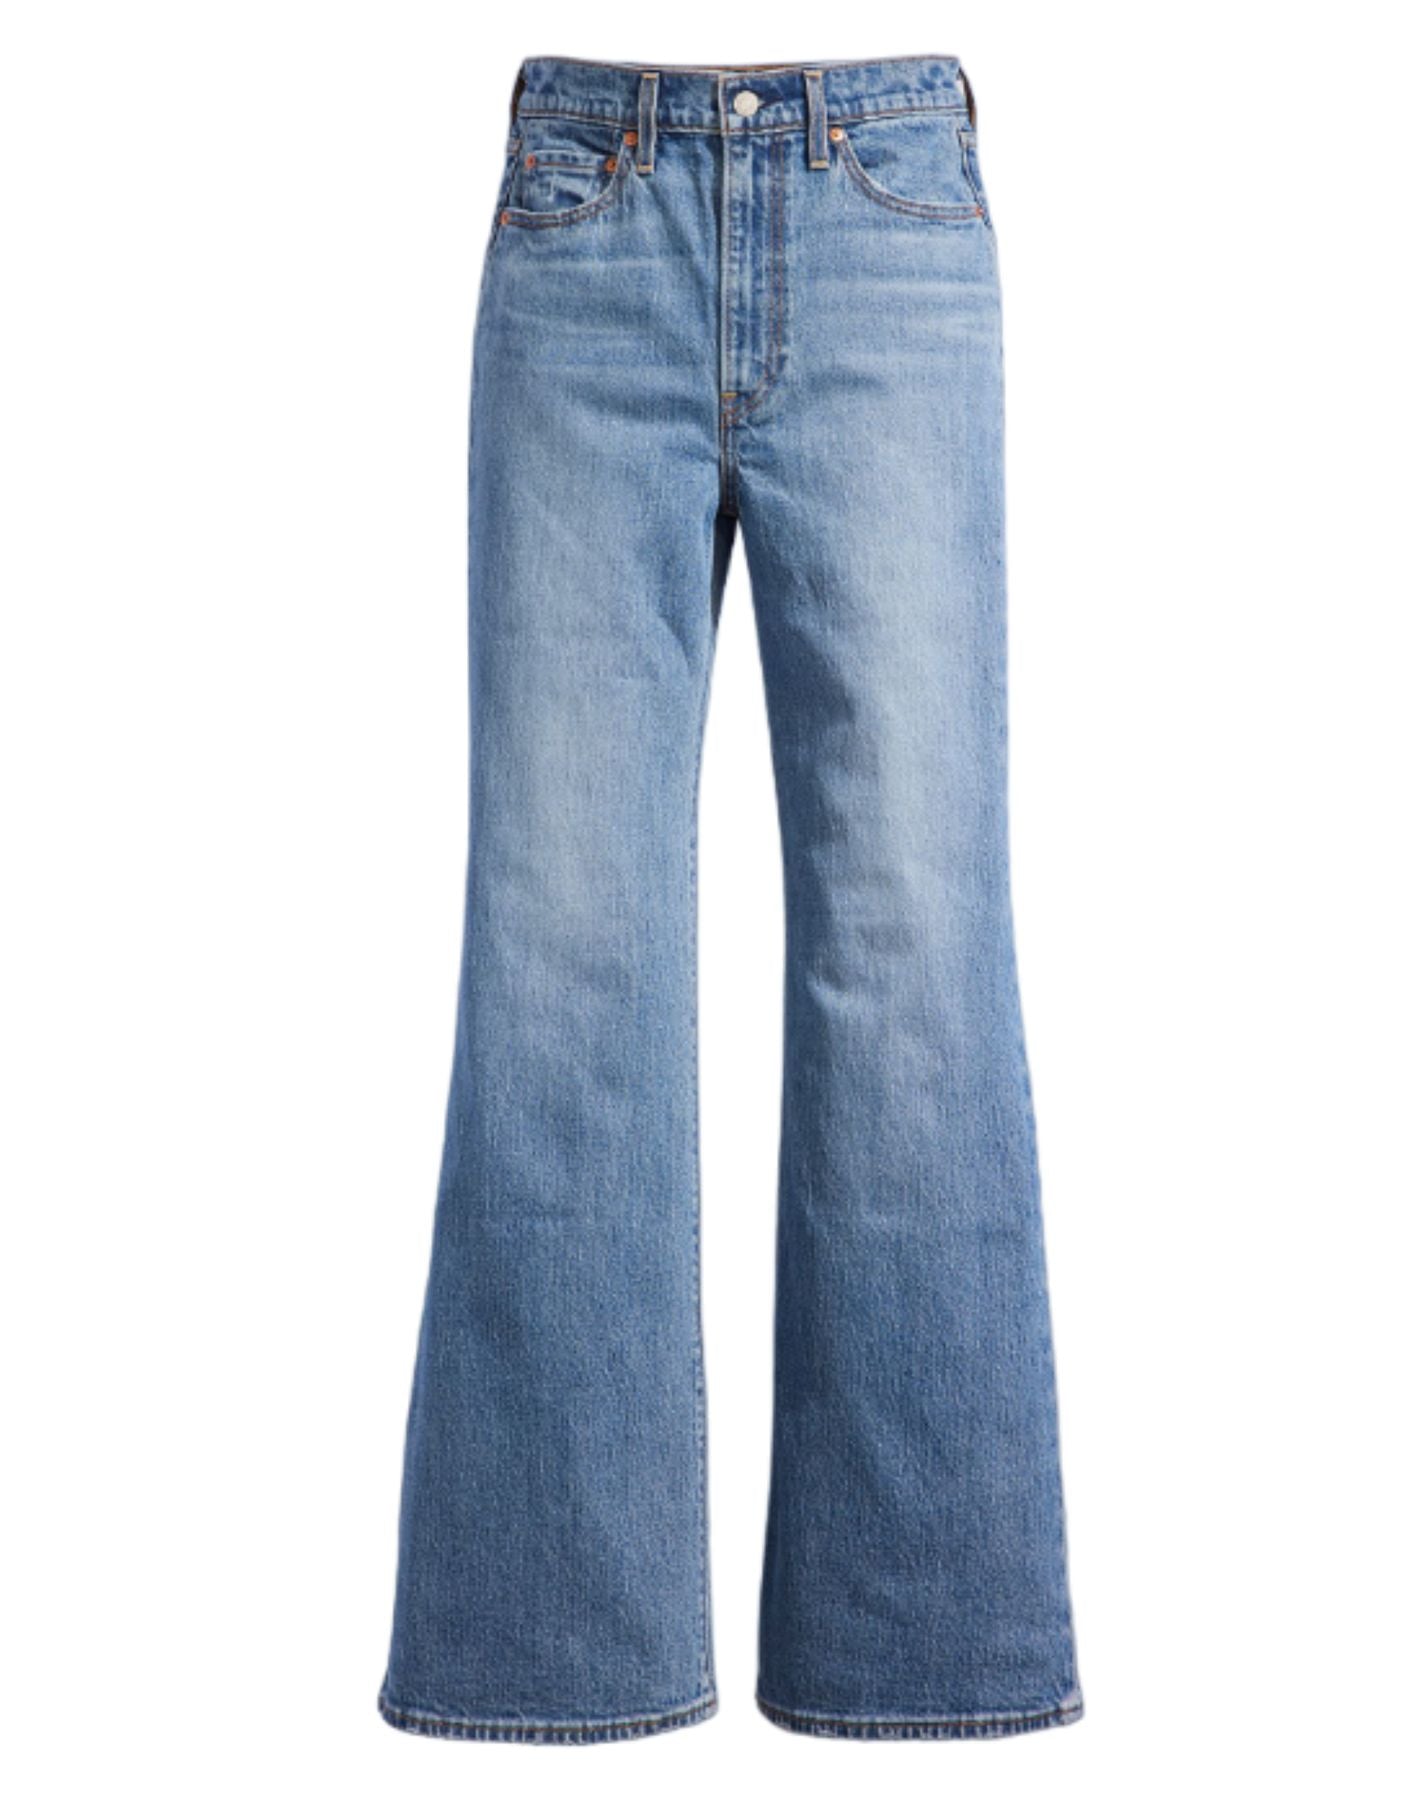 Jeans Woman A75030009 Levi's